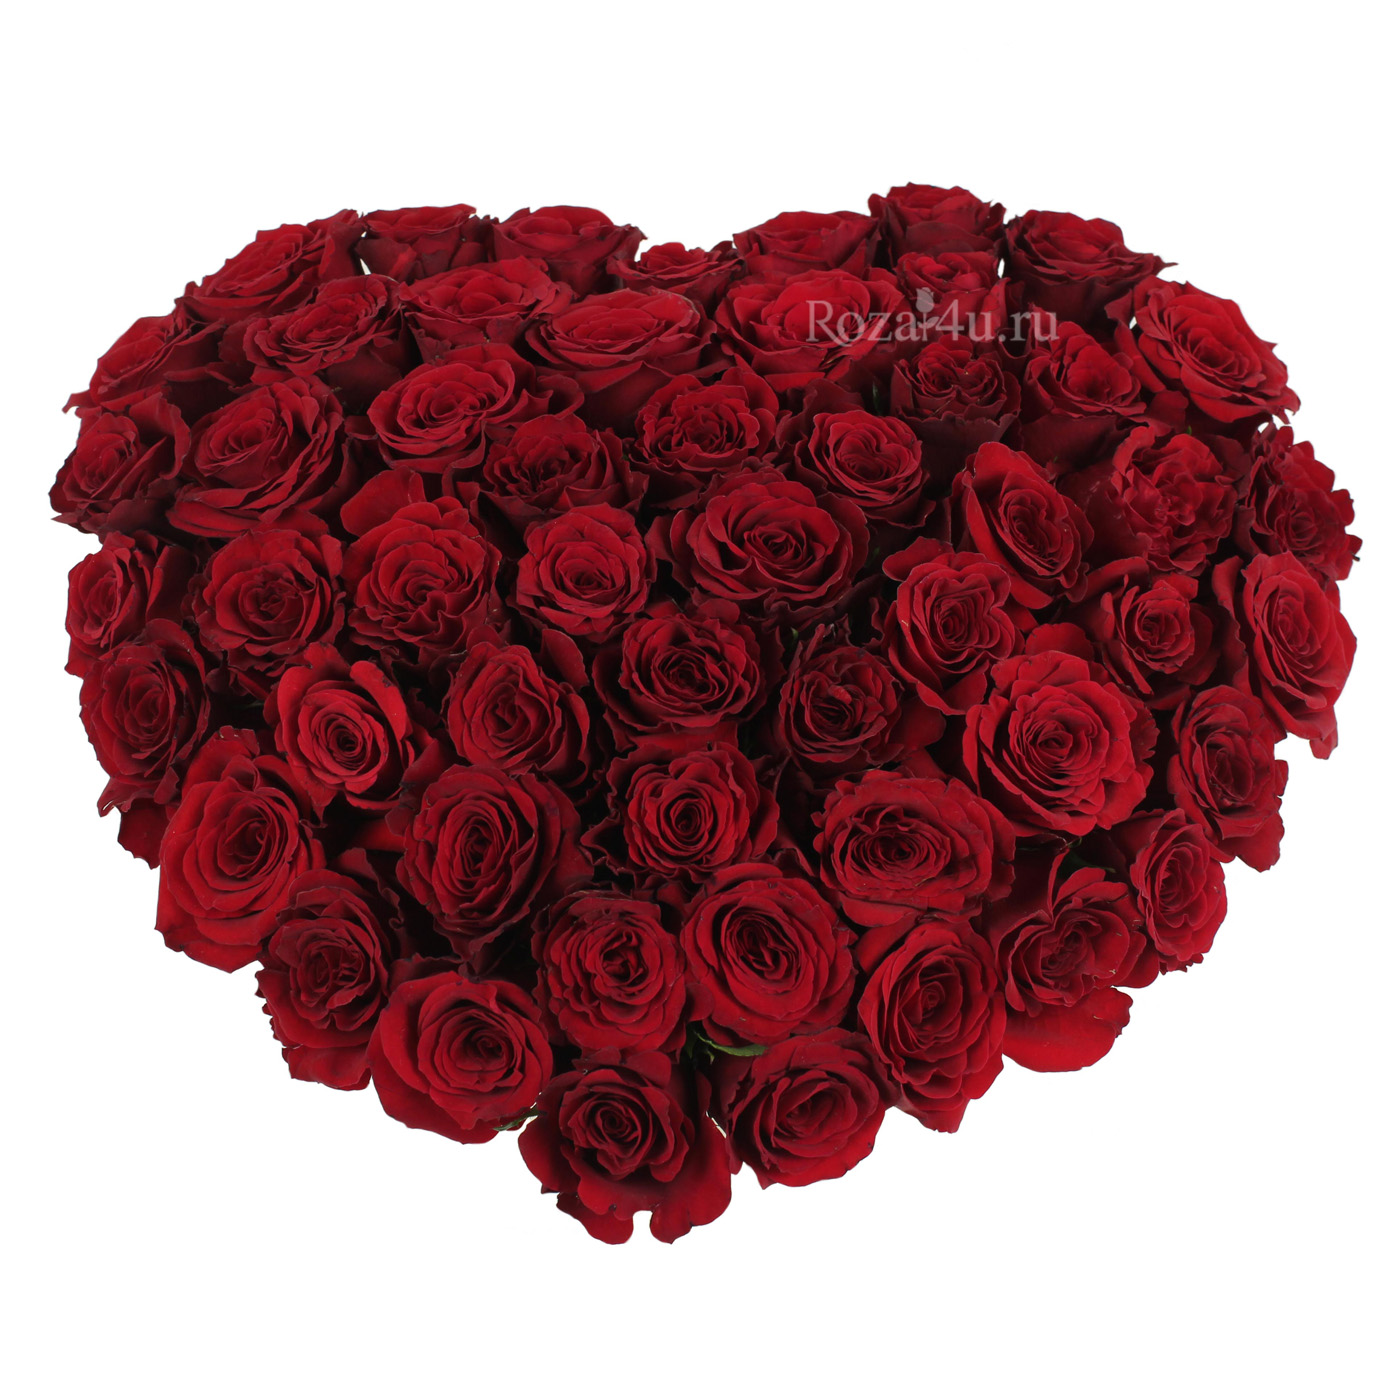 Красные розы в коробке формы сердца "День любви"